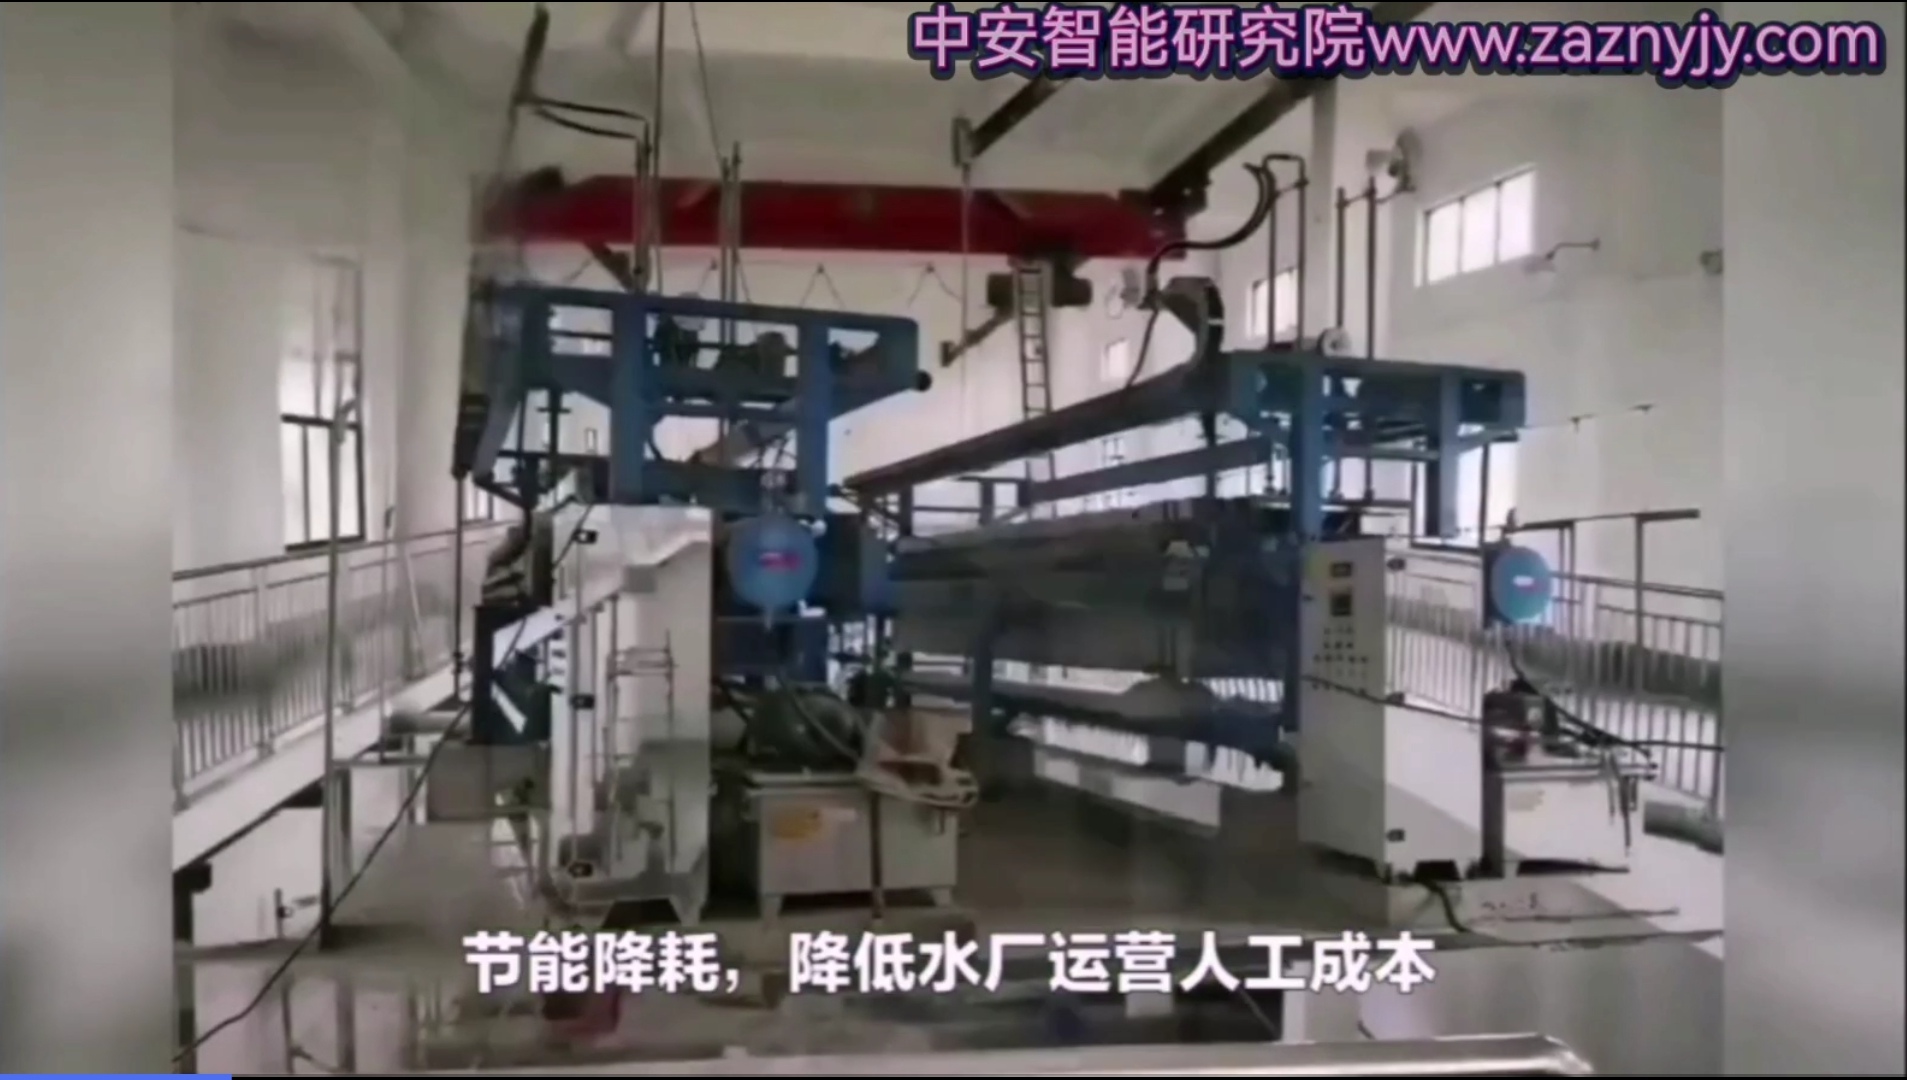 自来水厂自动化无人值守远程集中控制系统-河南郑州中安智能研究院